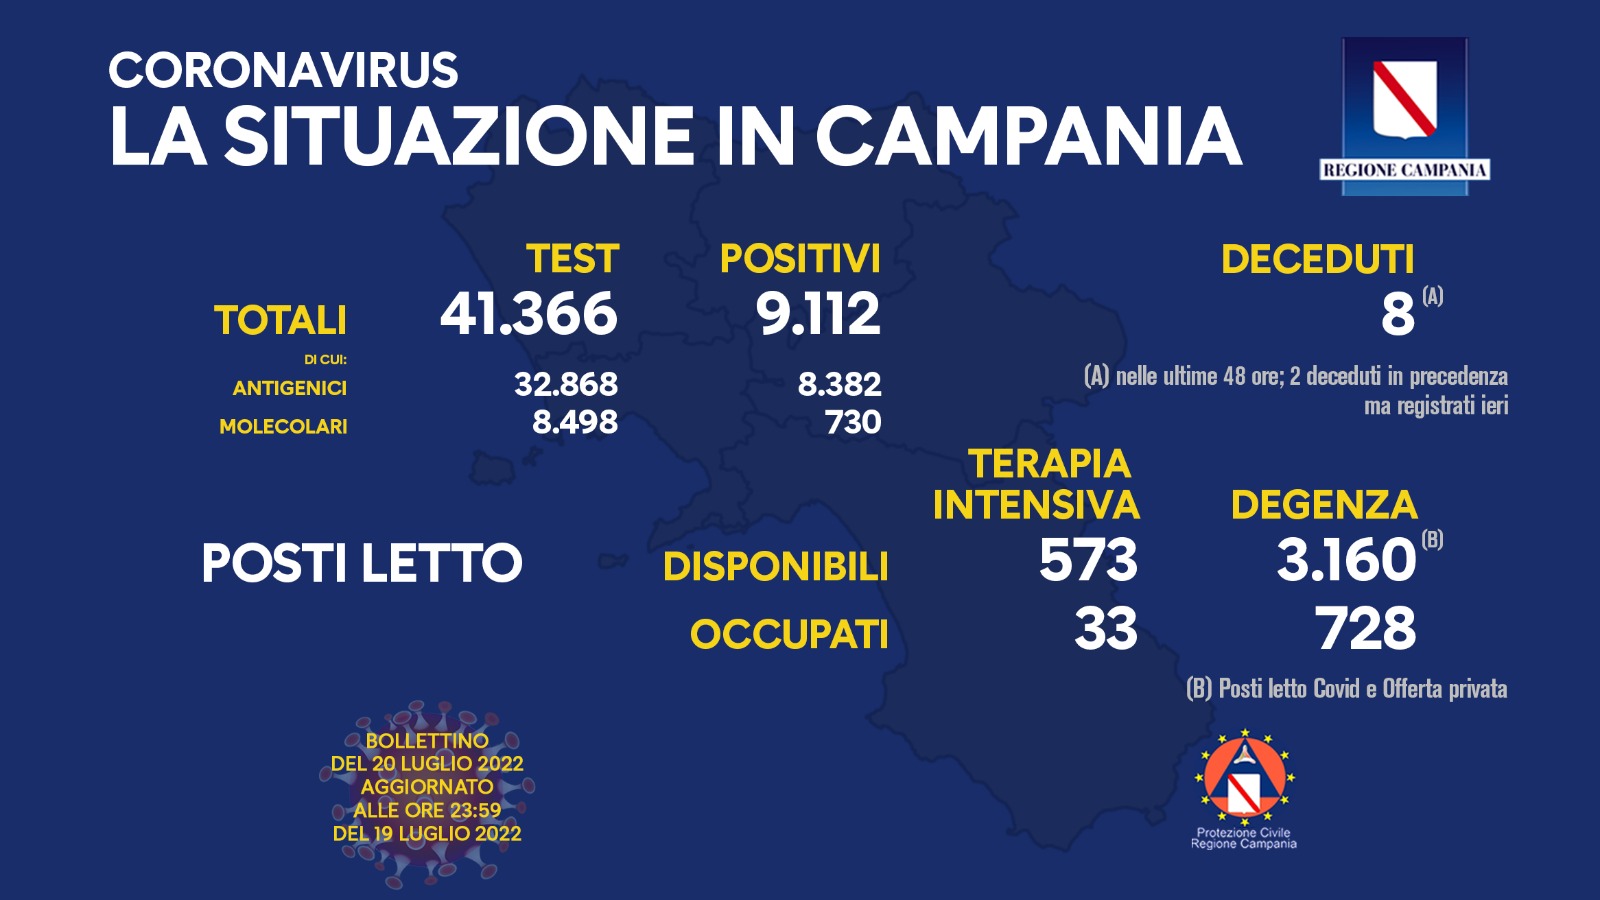 Regione Campania: Coronavirus, Unità di Crisi, Bollettino, 9.112 casi positivi, 8 decessi